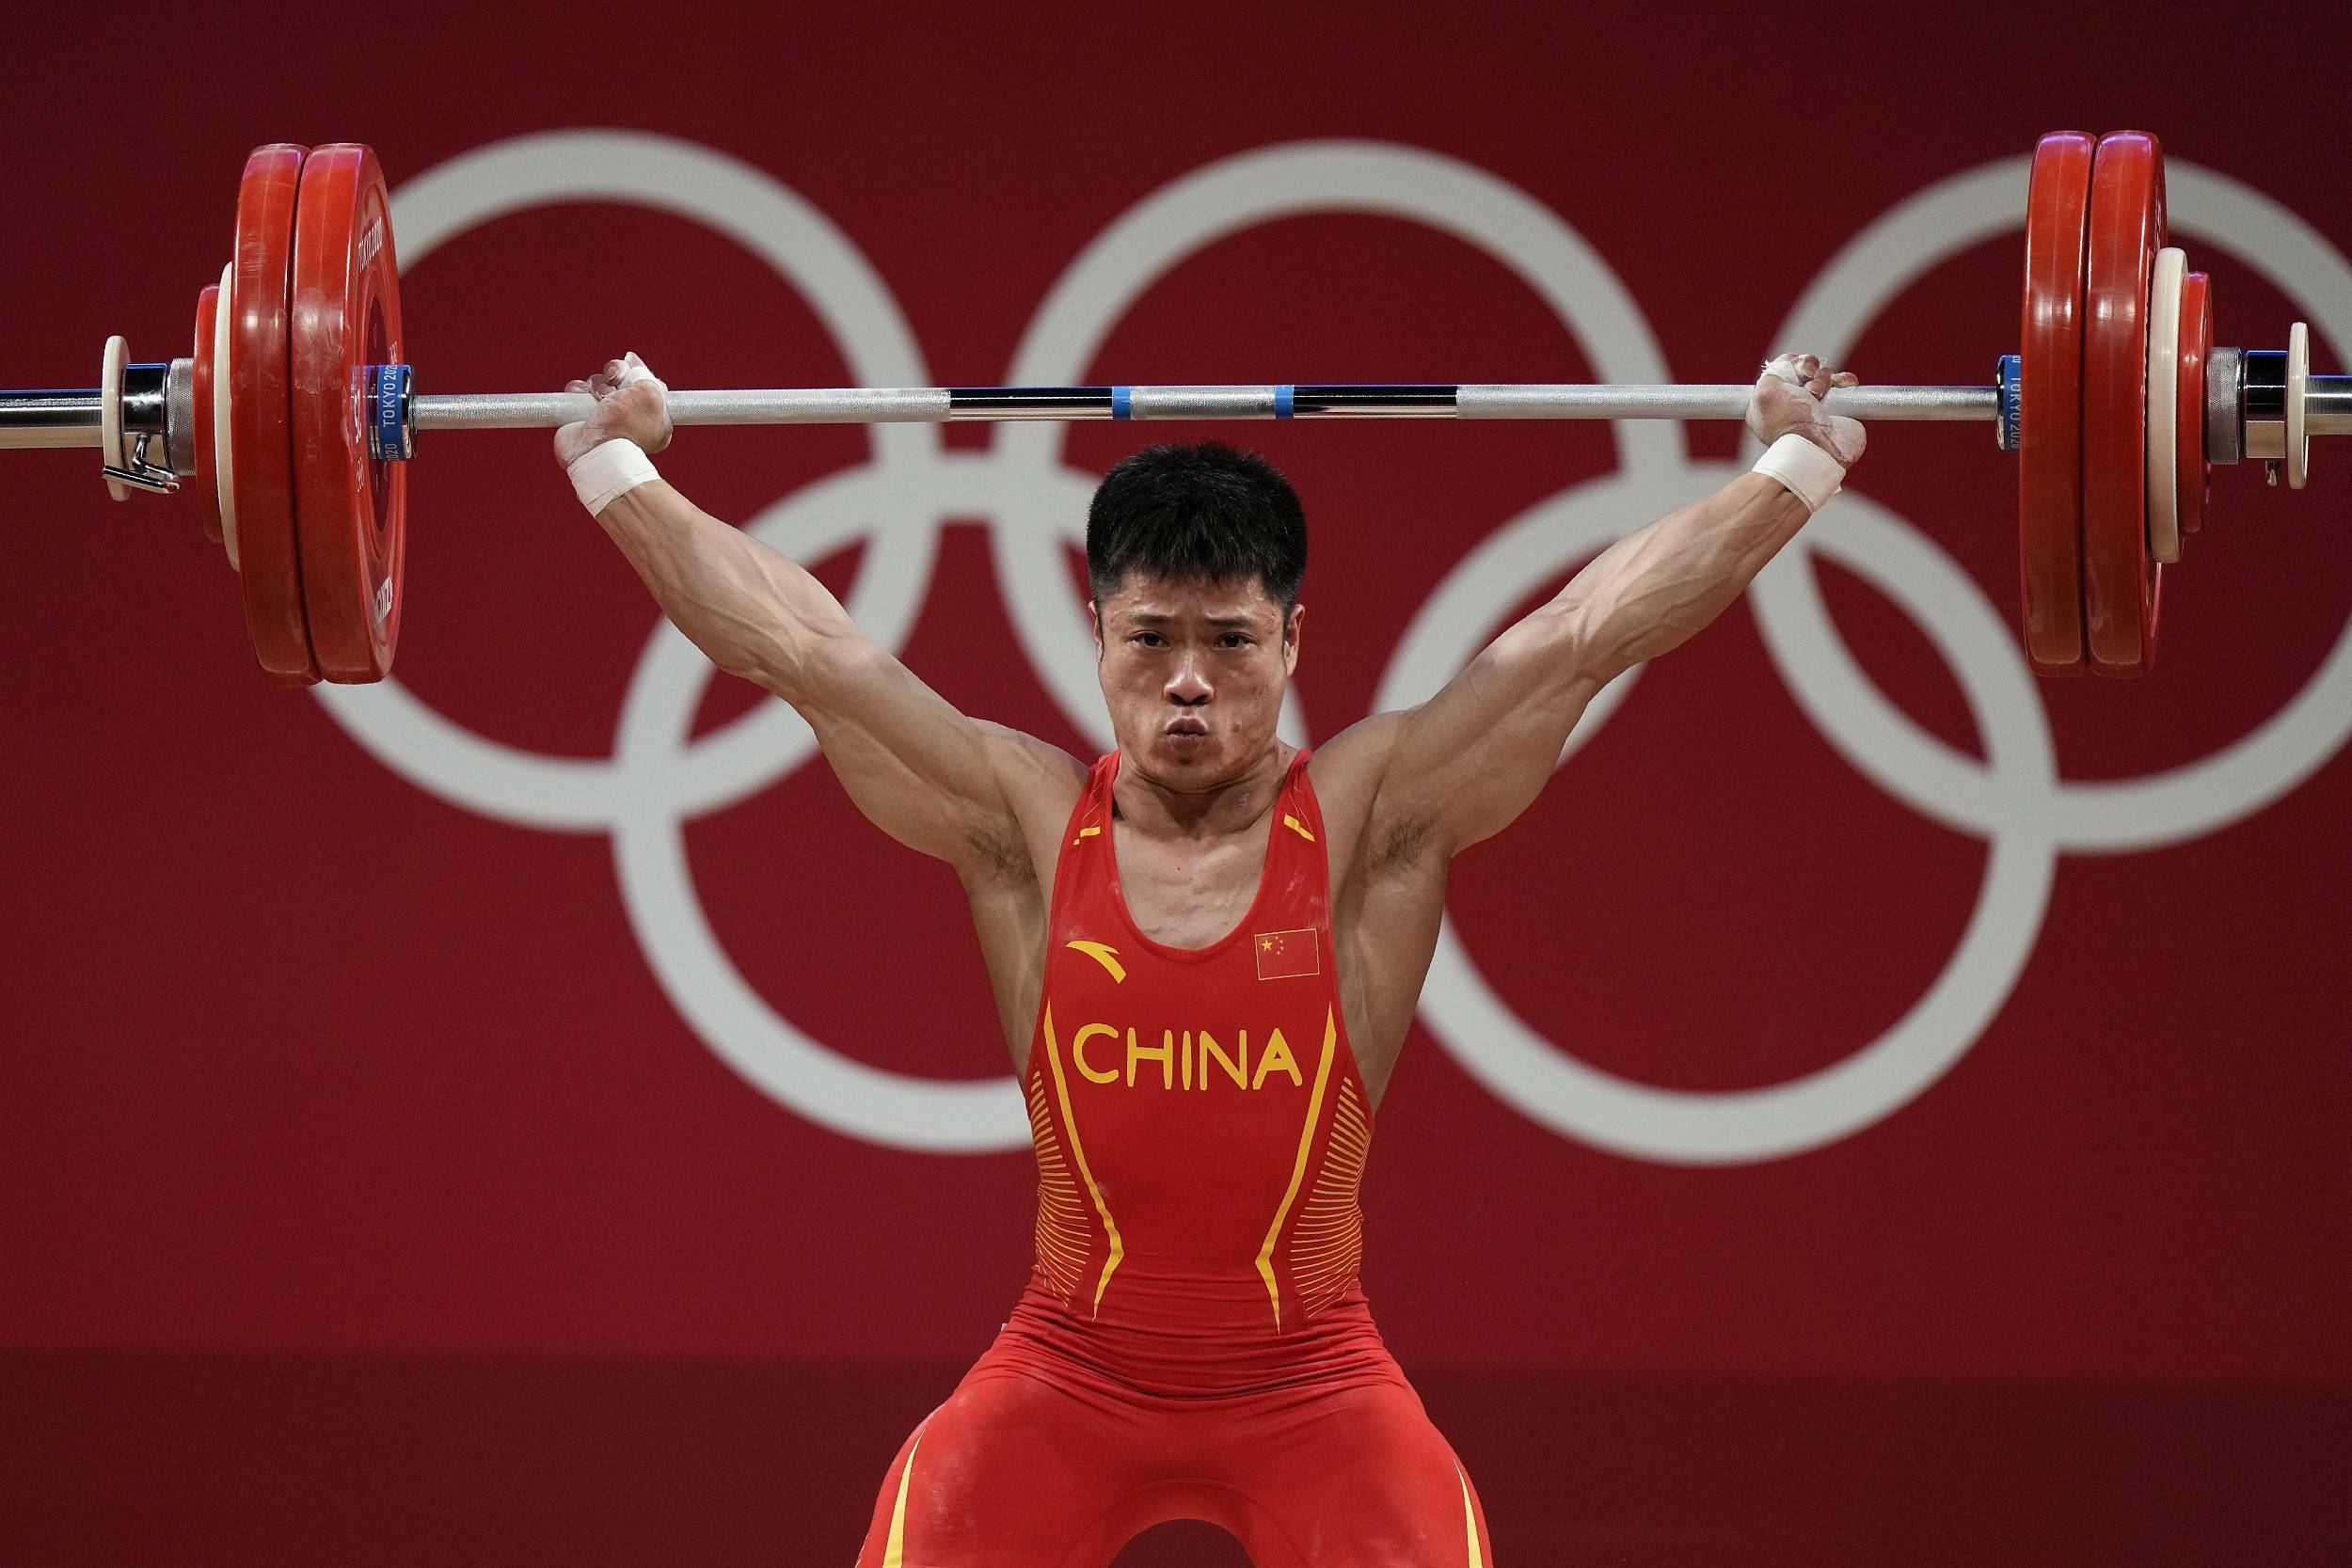 男子十米气步枪预赛中,杨浩然以6327环的成绩,创造奥运会纪录